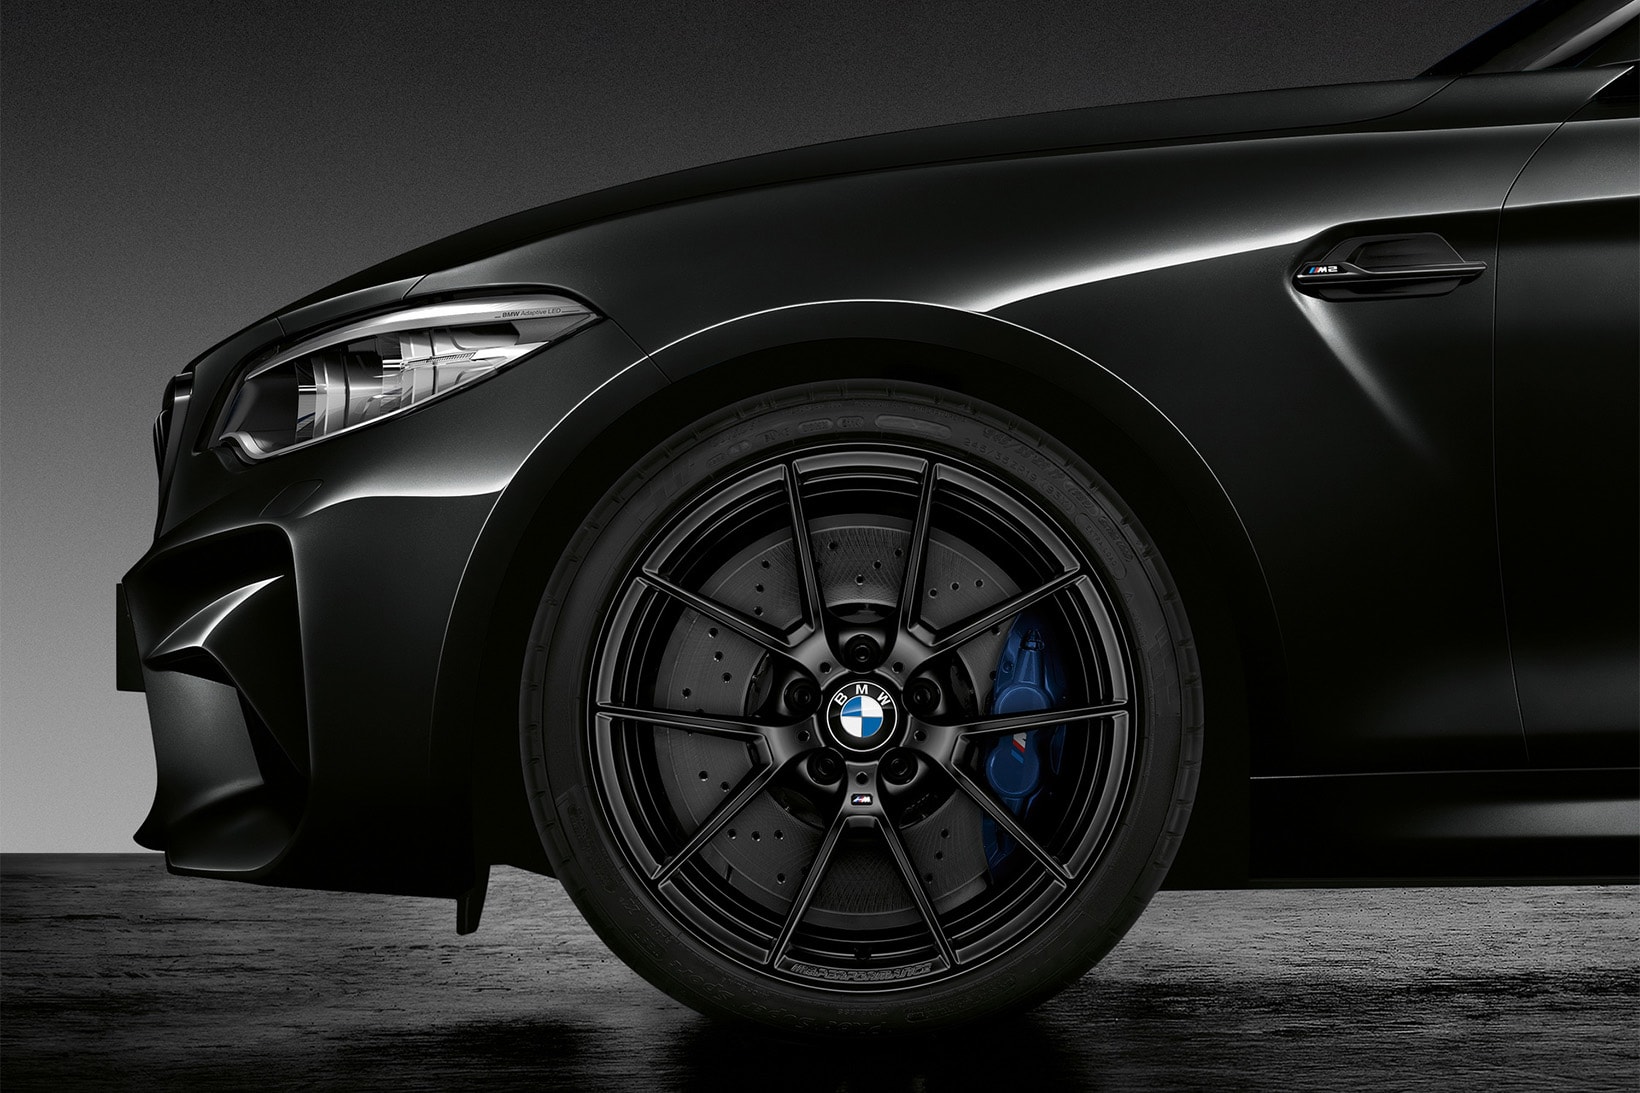 BMW M2 Black Shadow Edition all black murdered out 2018 car